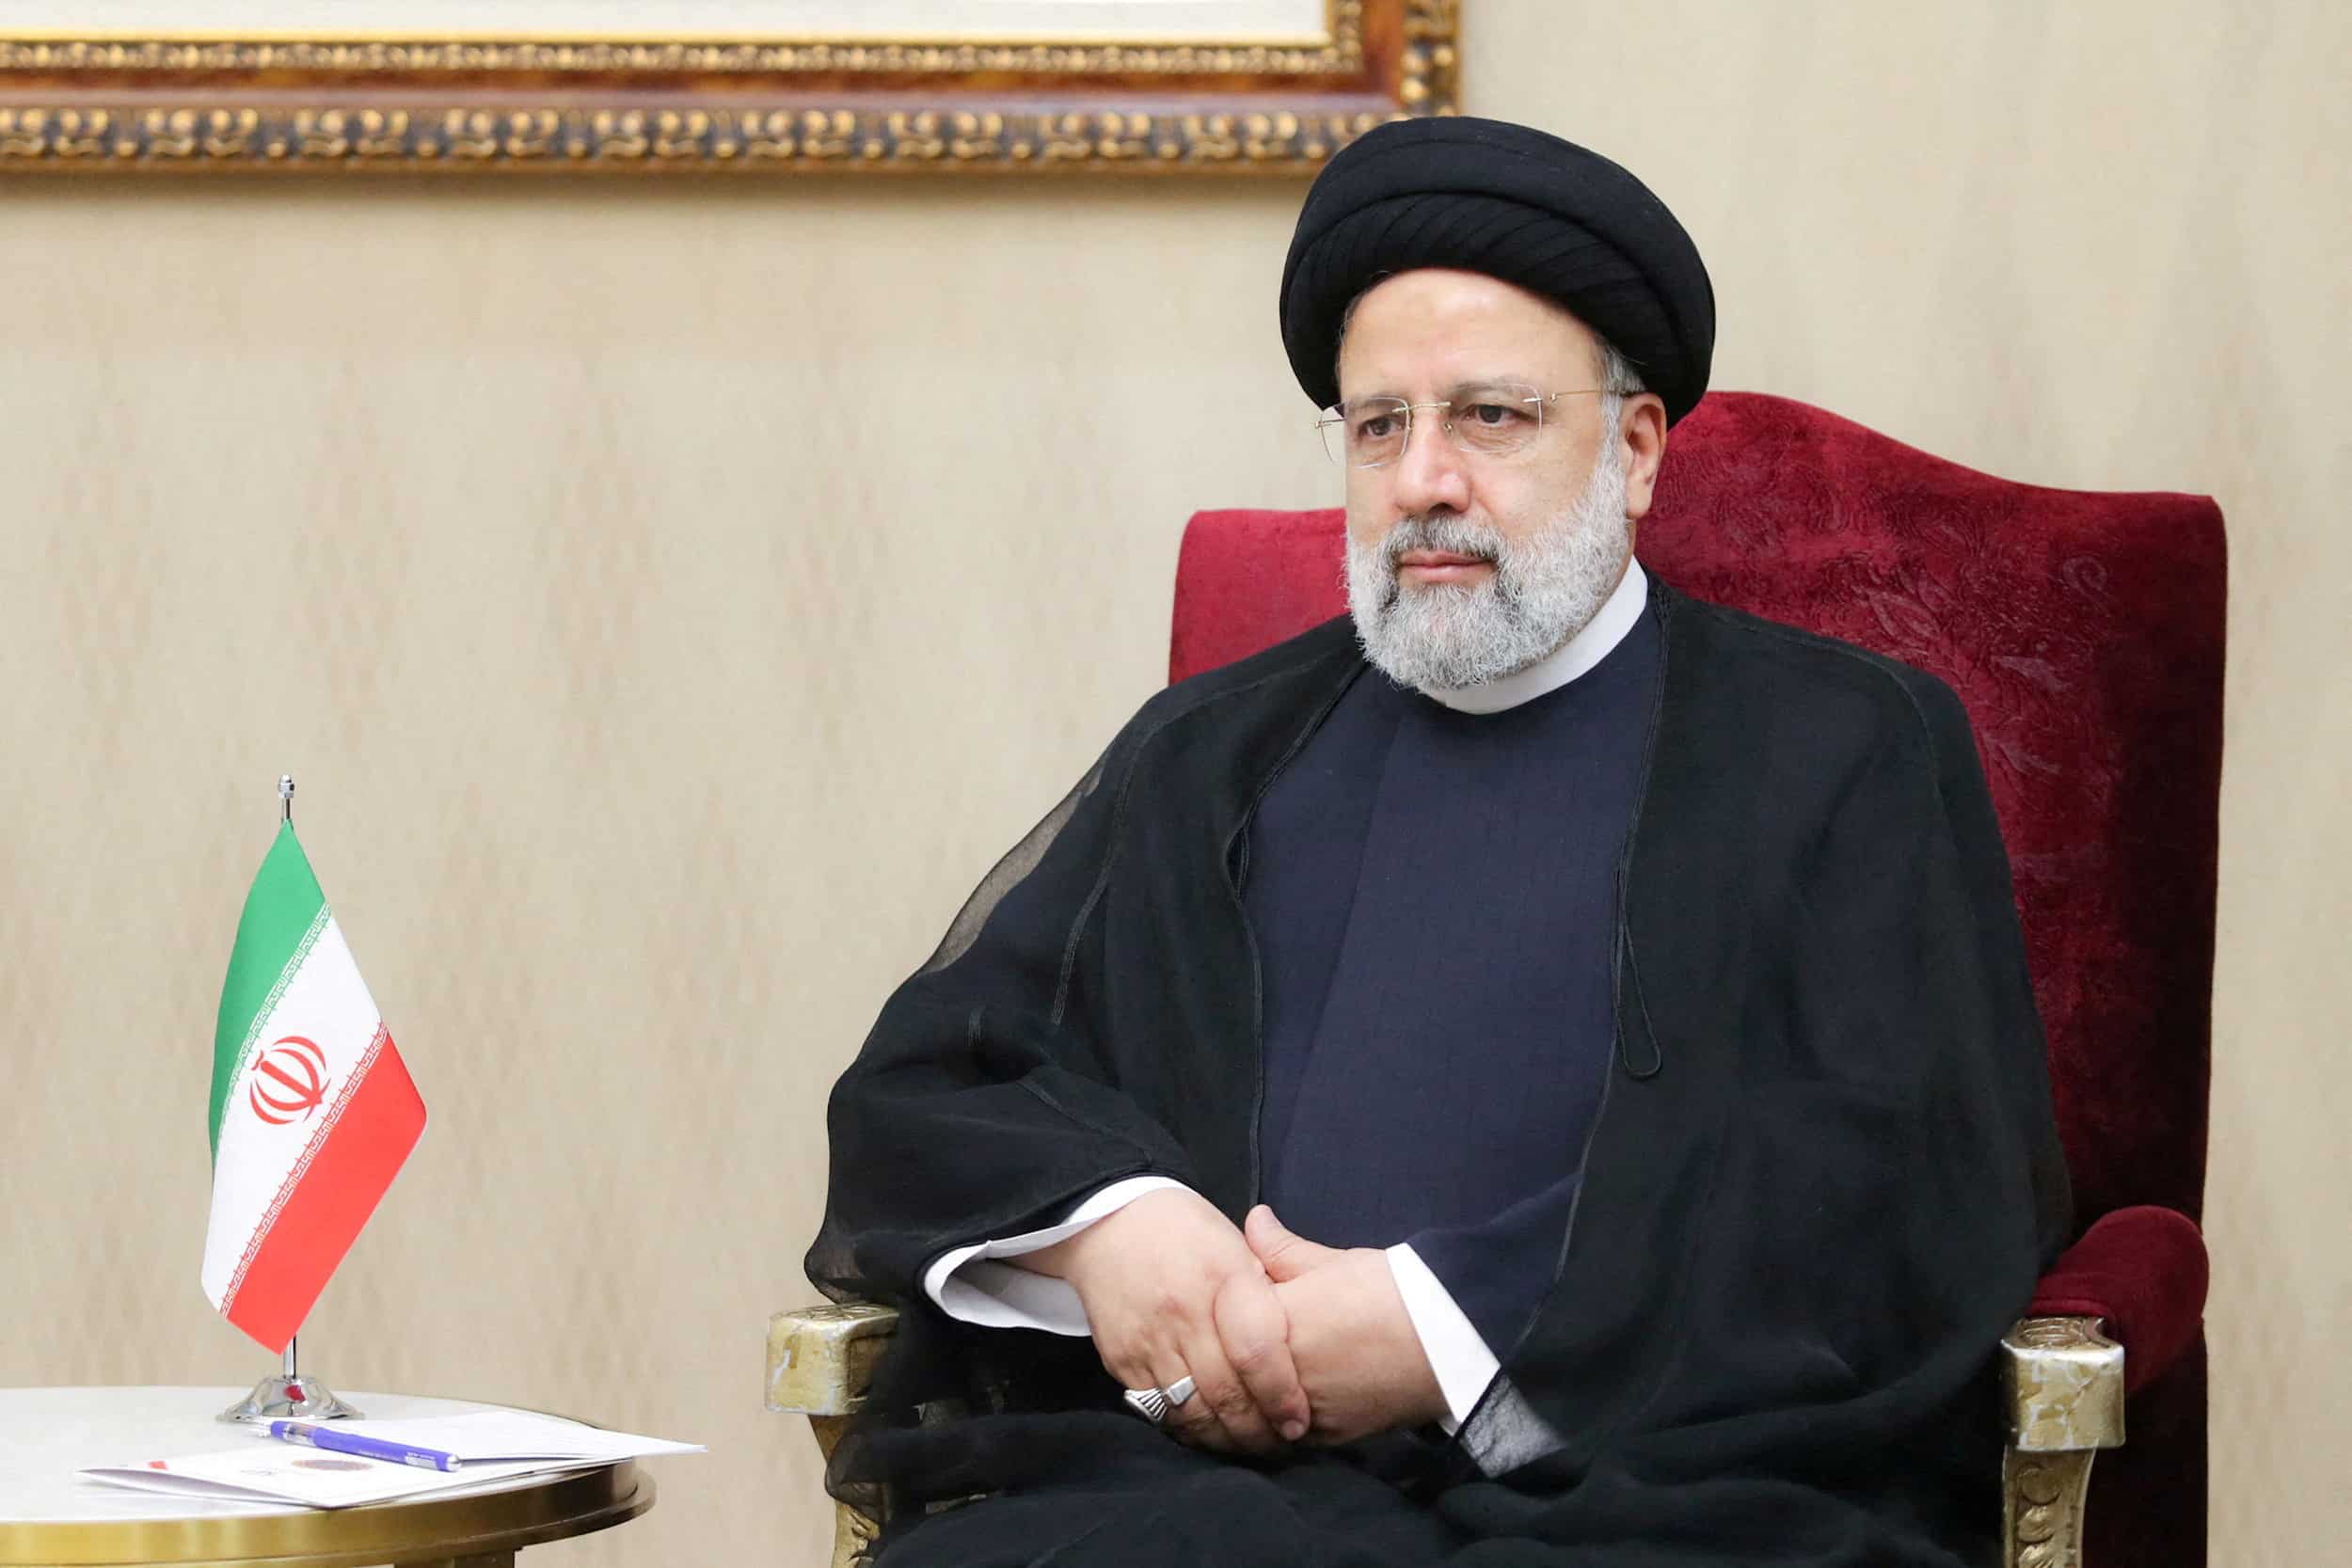 El presidente iraní Raisi visitará Pakistán para reparar los lazos tras los ataques transfronterizos